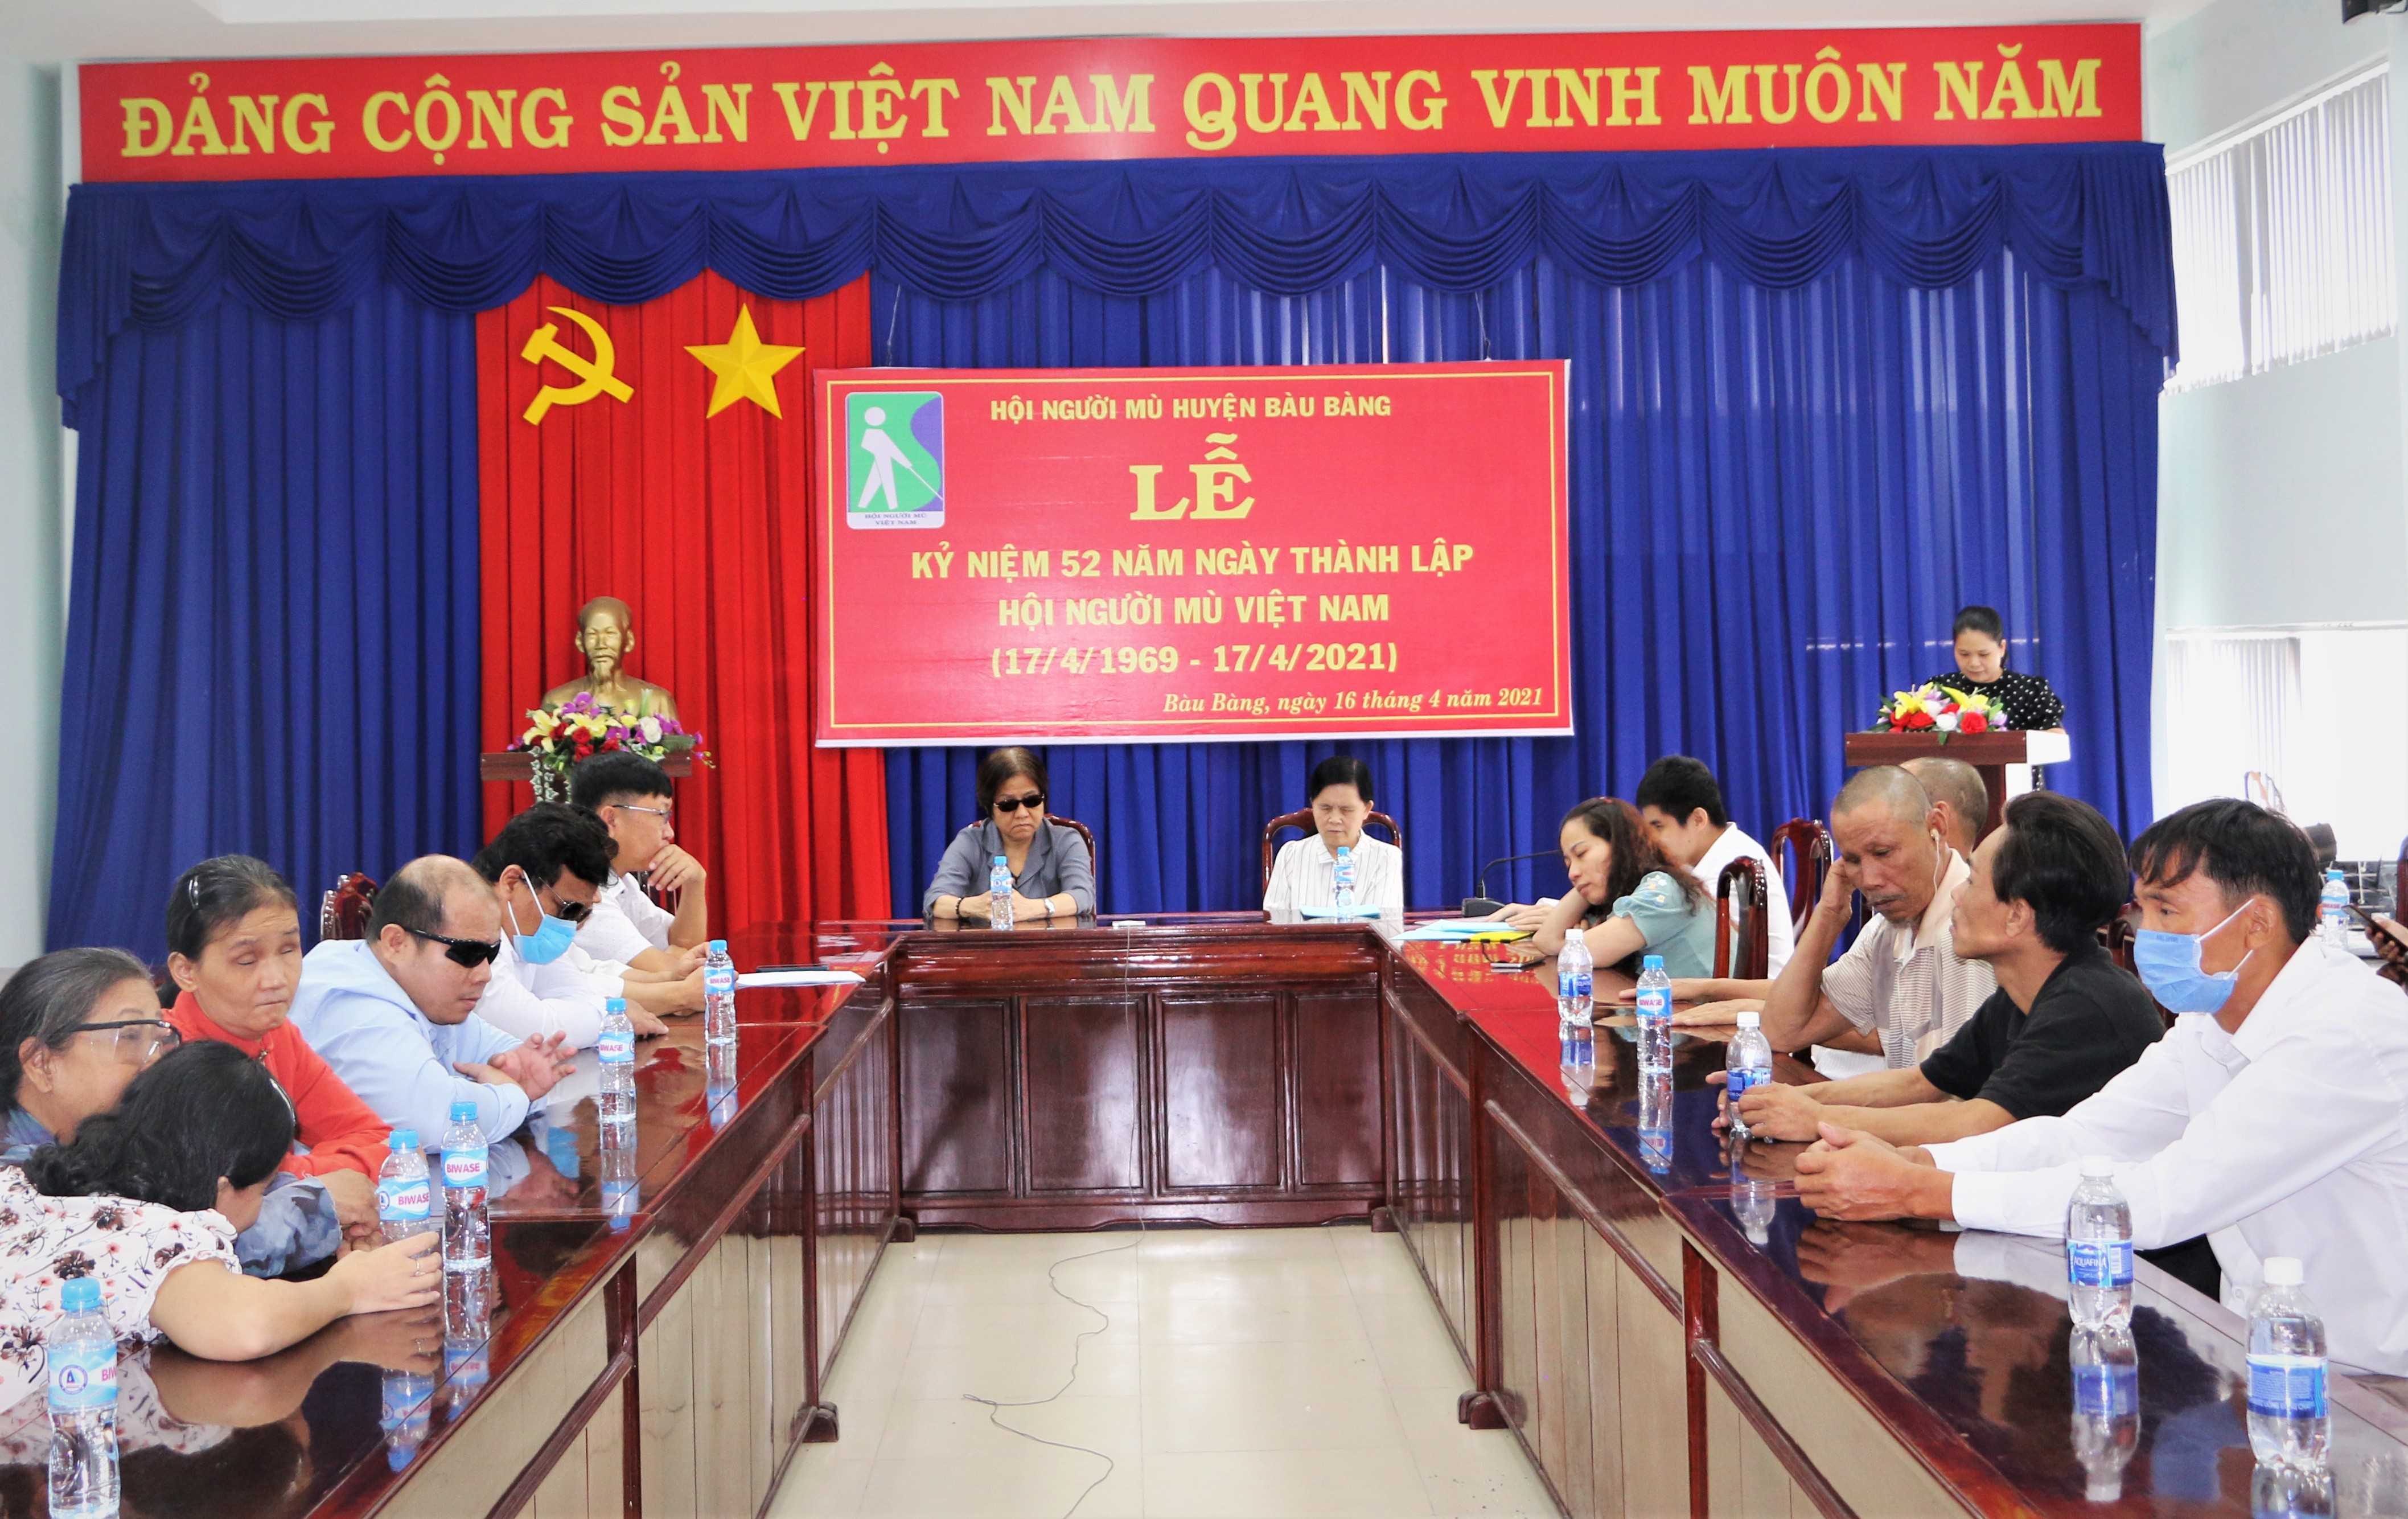 Hội người mù huyện Bàu Bàng tổ chức kỷ niệm 52 năm ngày thành lập Hội người mù Việt Nam (17-4-1969-17-4-2021)